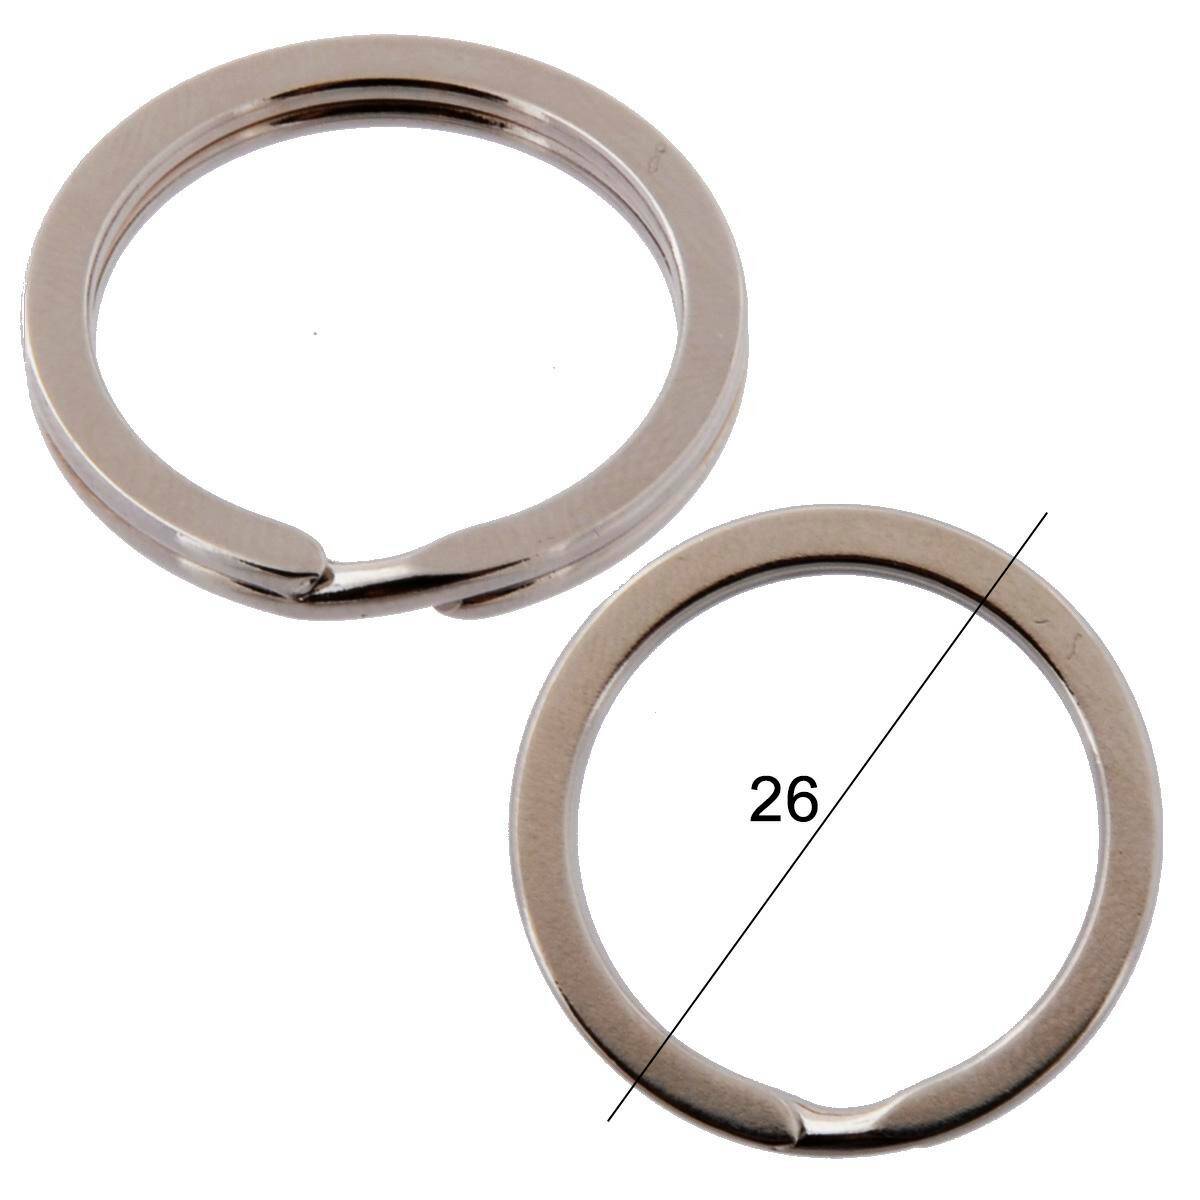 Key rings for keys flat diameter 26mm